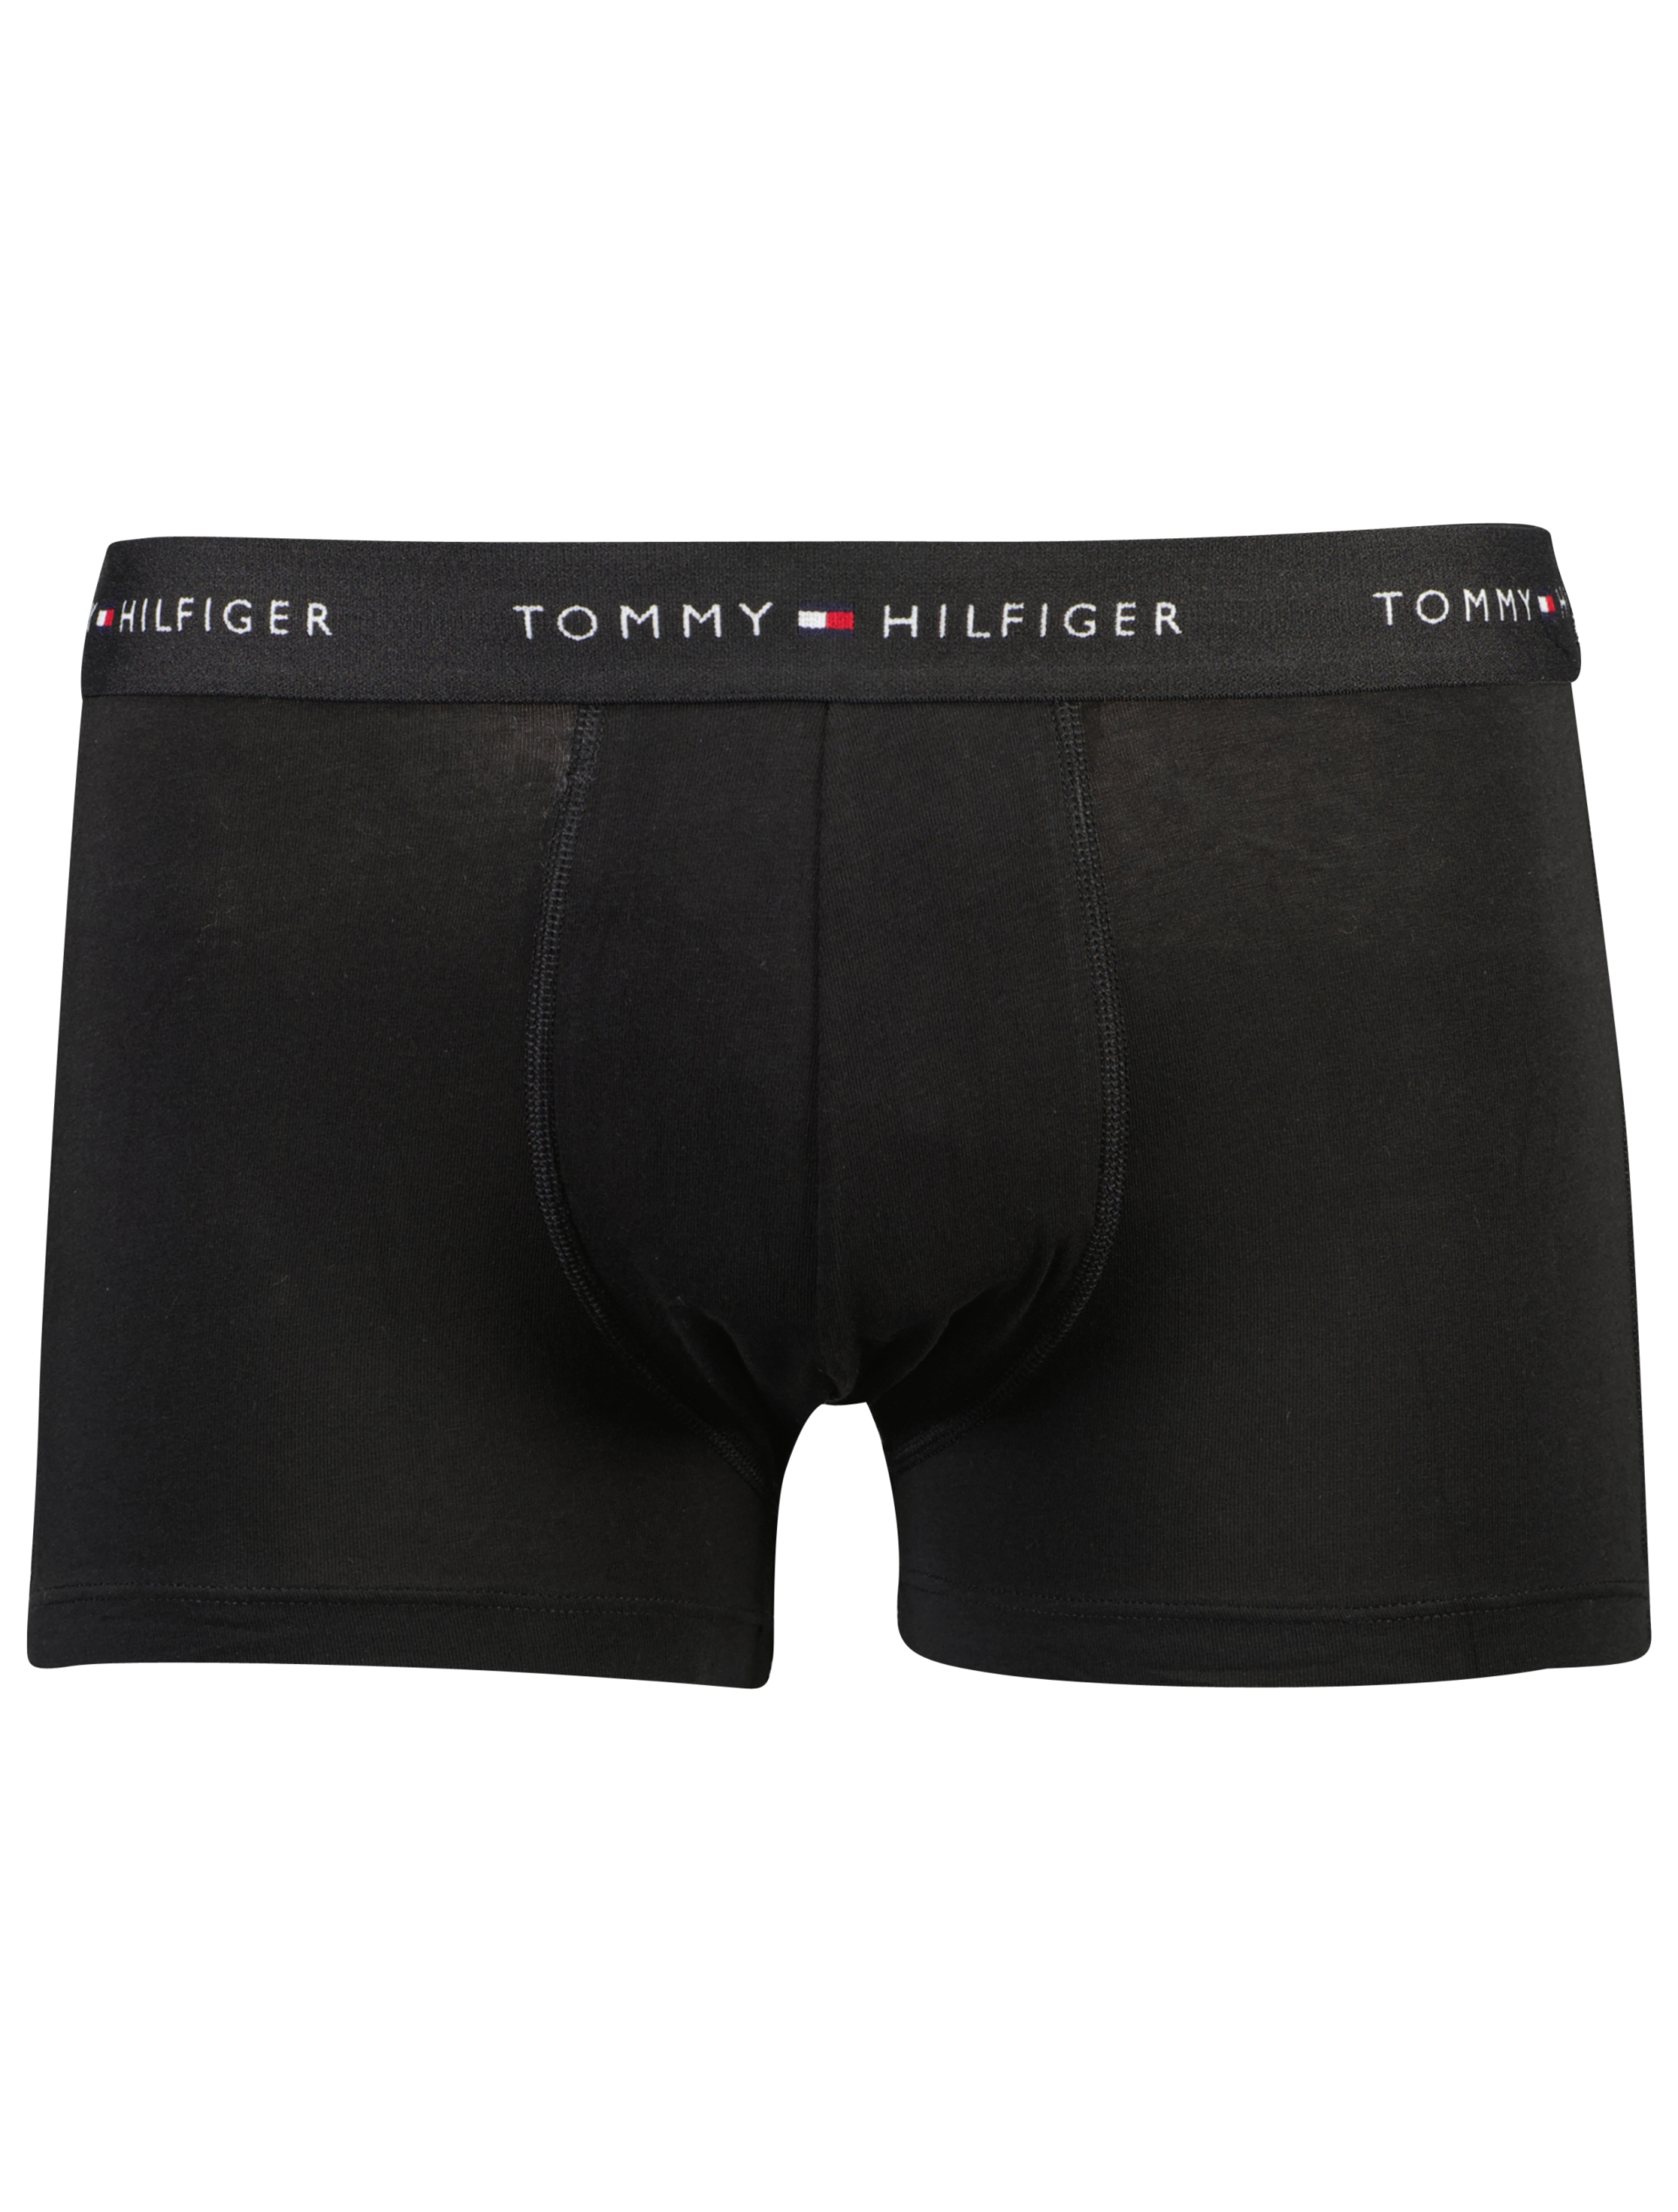 Tommy Hilfiger Tights sort / 0sk black